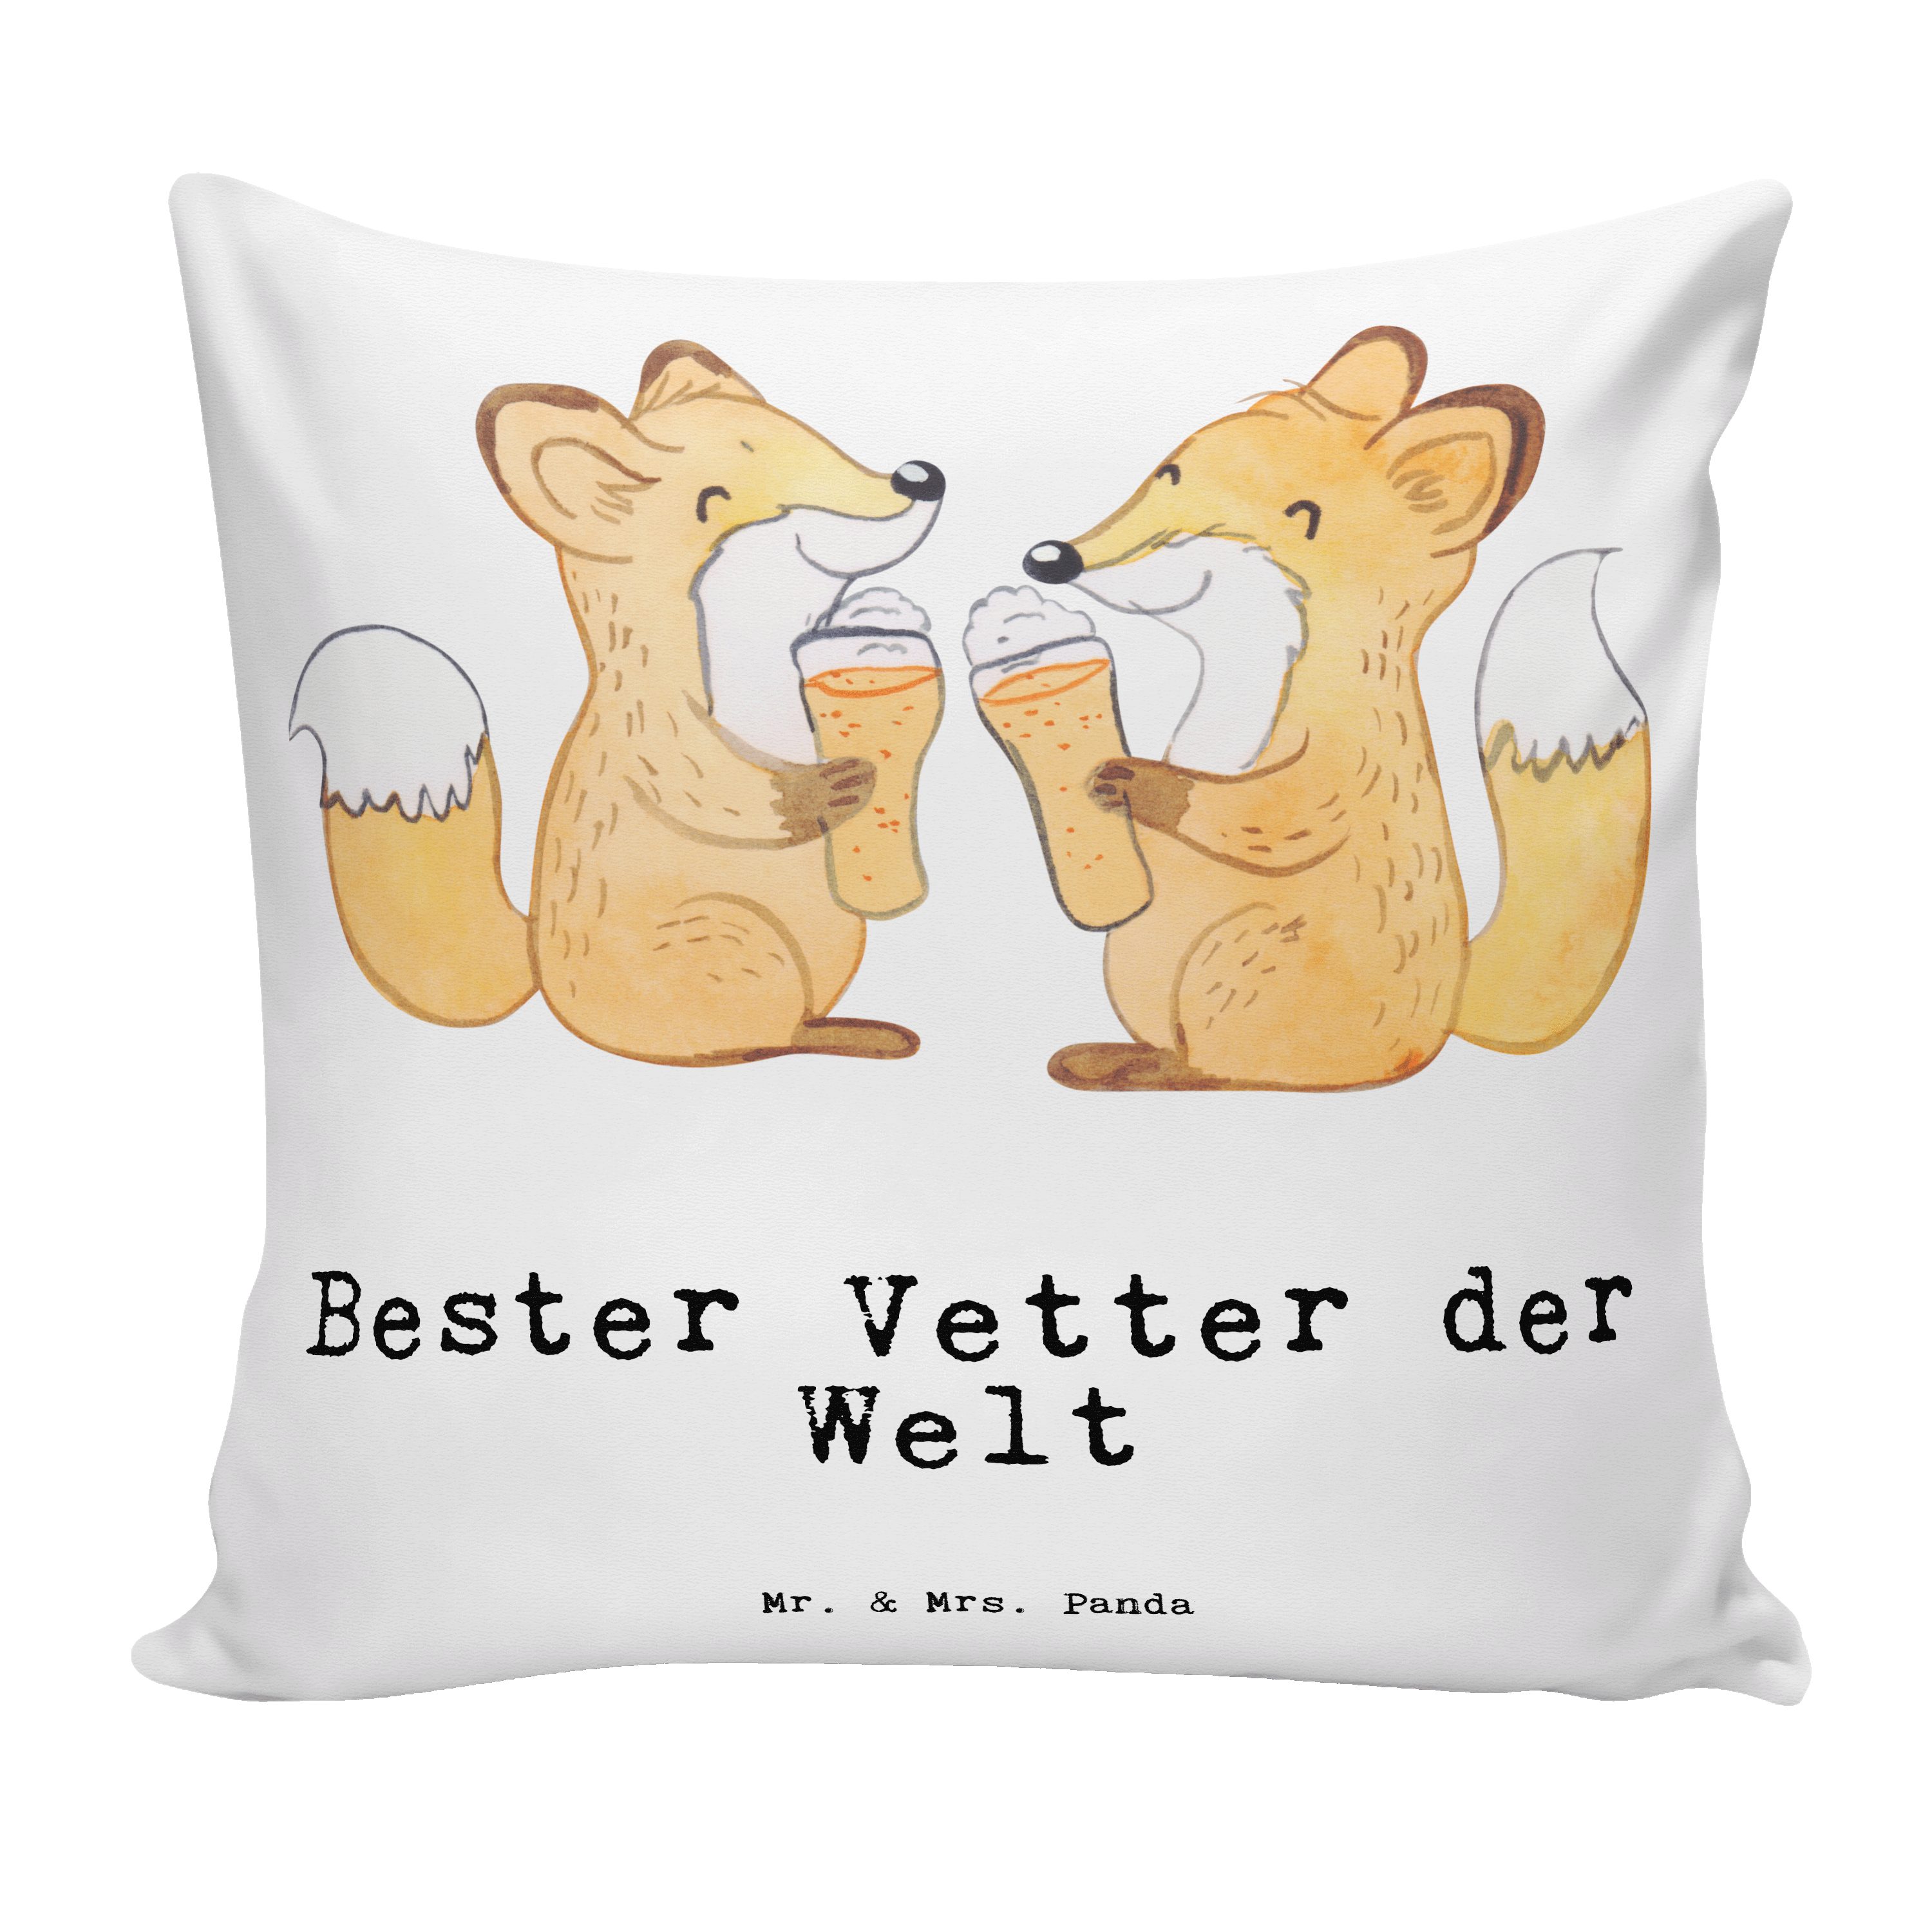 Mr. & Mrs. Panda Dekokissen Fuchs Bester Vetter der Welt - Weiß - Geschenk, Geburtstag, Cousine